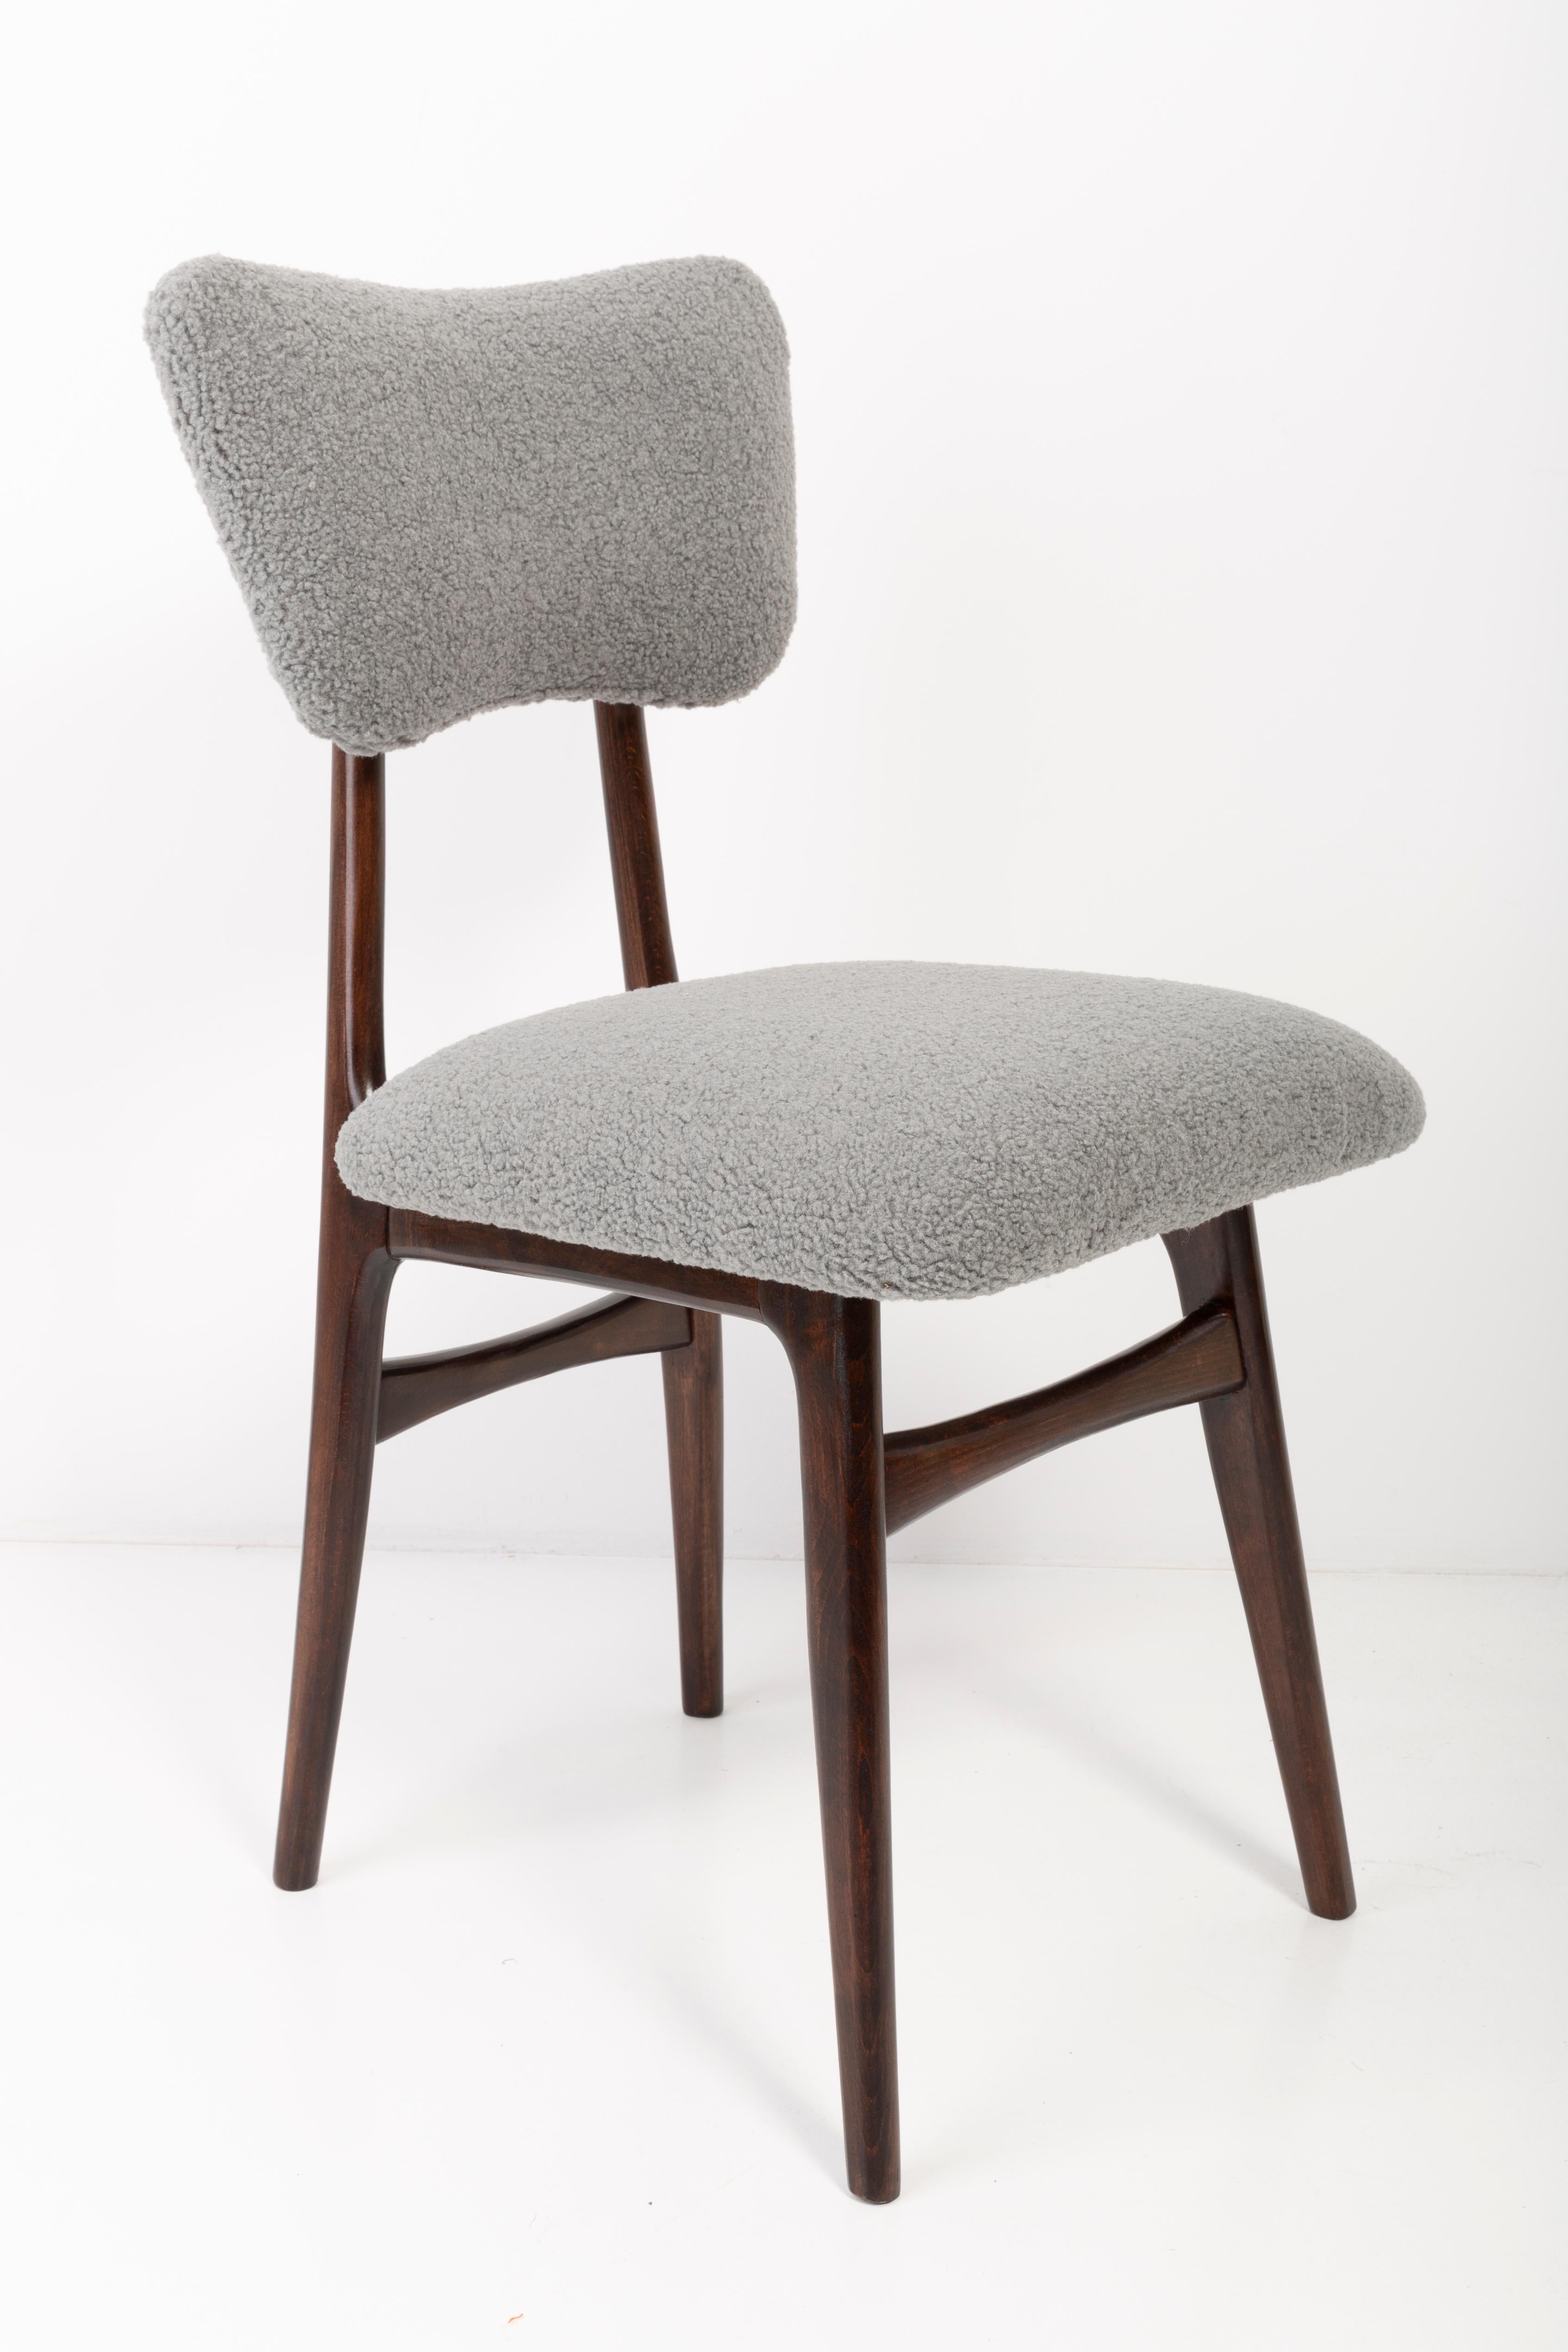 Chaises conçues par le professeur Rajmund Halas. Fabriqué en bois de hêtre. Les chaises ont été entièrement rénovées et les boiseries ont été rafraîchies. L'assise et le dossier sont habillés d'un tissu bouclé gris, durable et agréable au toucher.